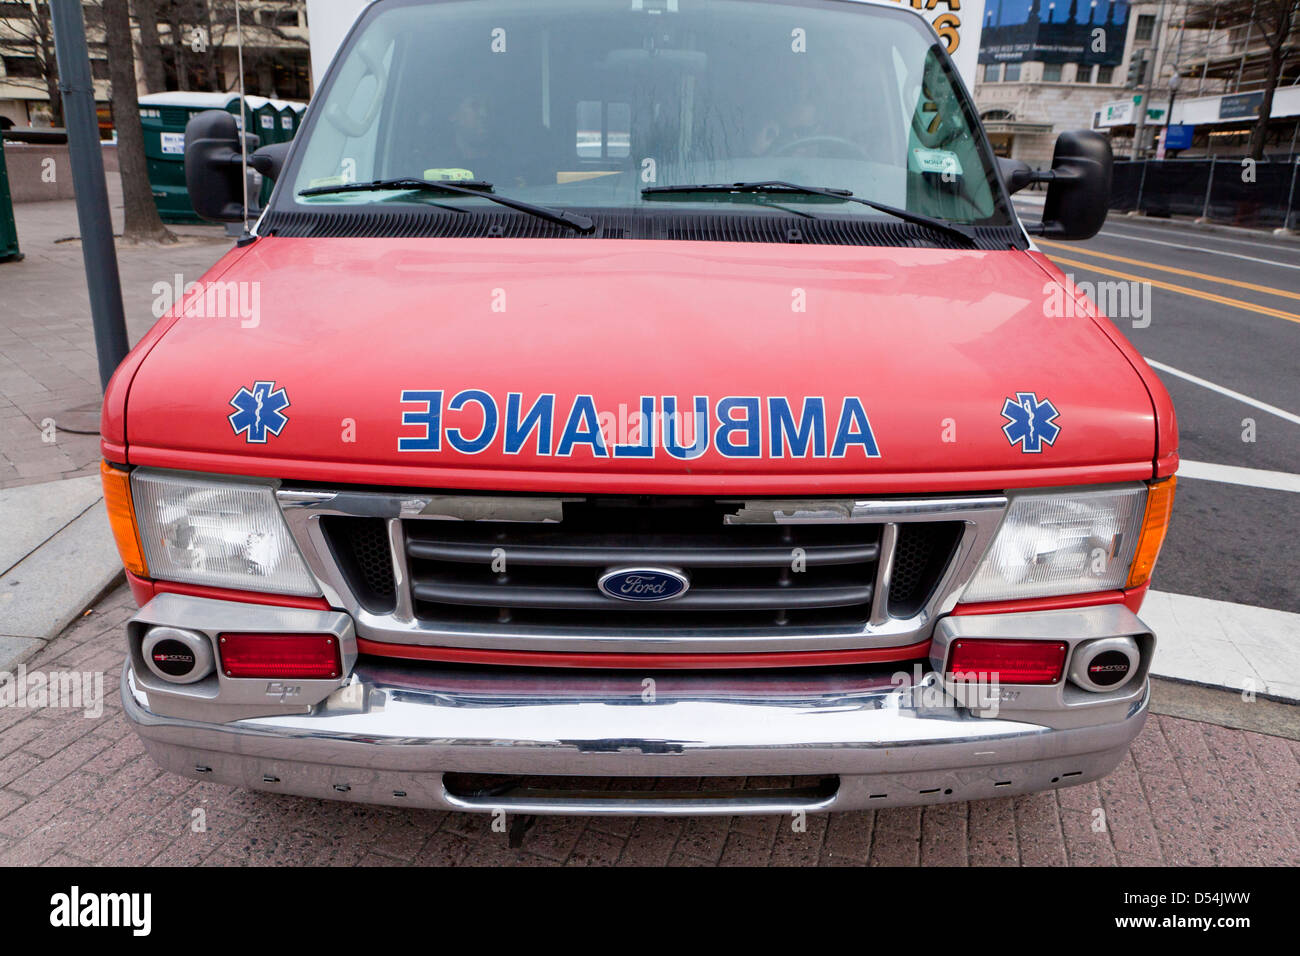 Ambulance front view - USA Stock Photo